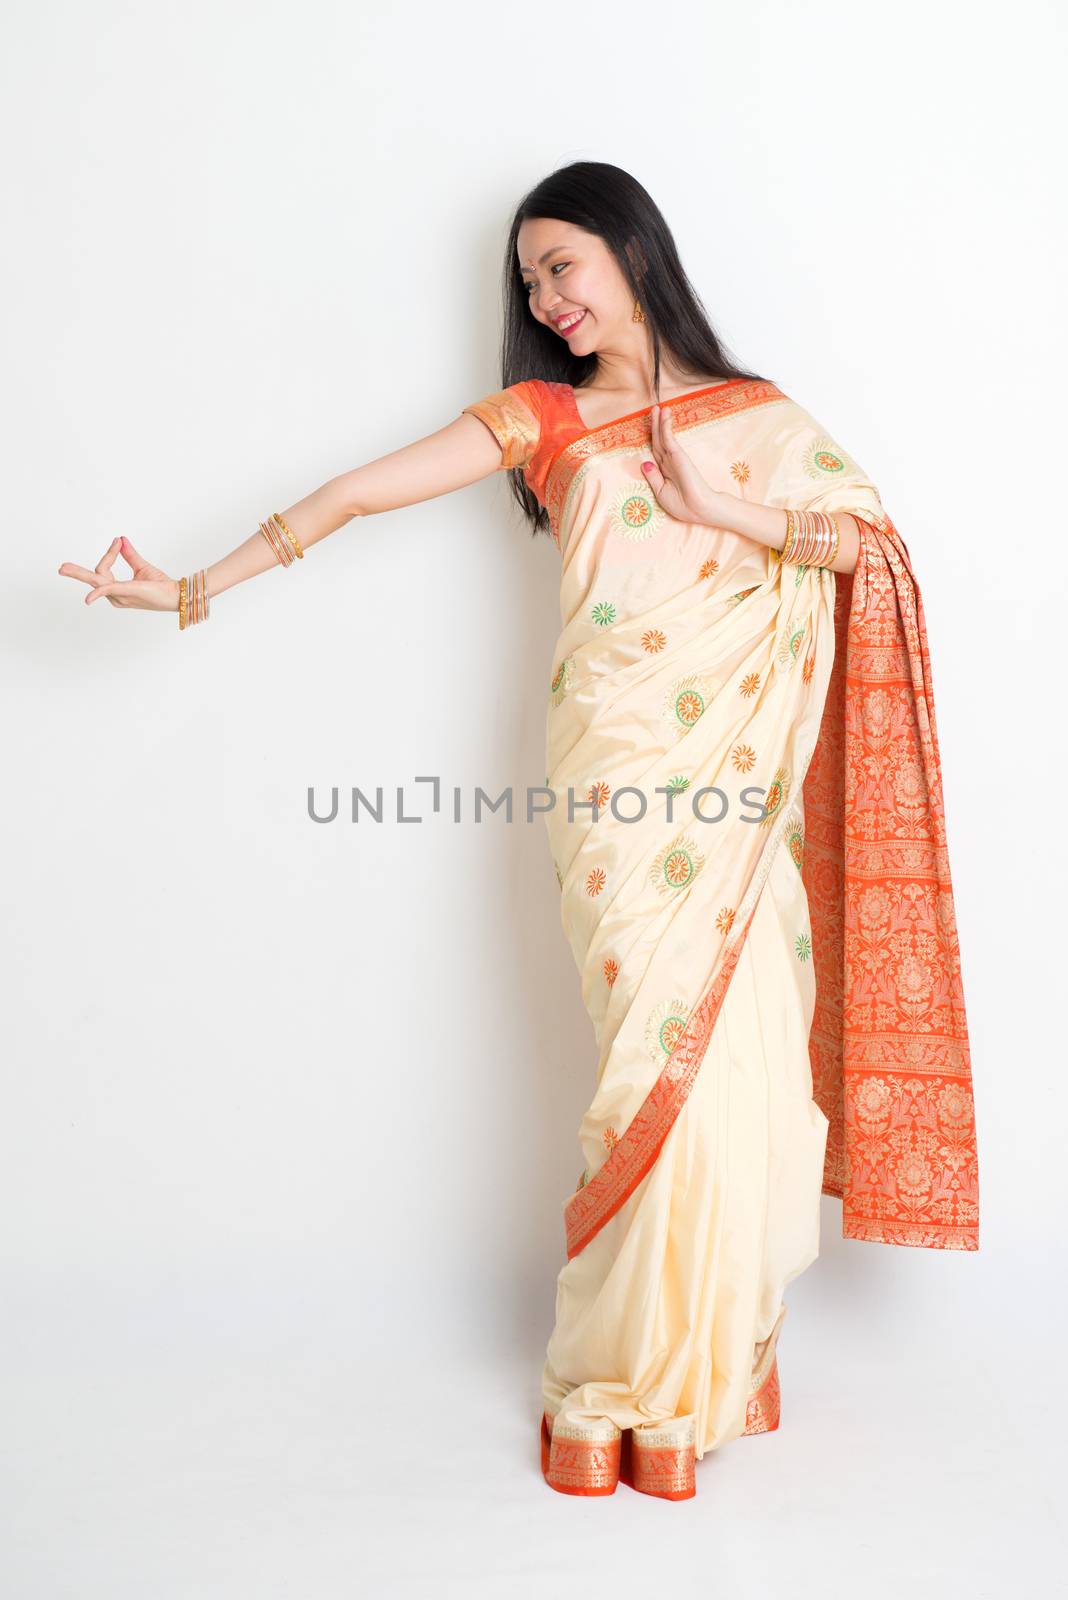 Woman in Indian sari dress dancing by szefei